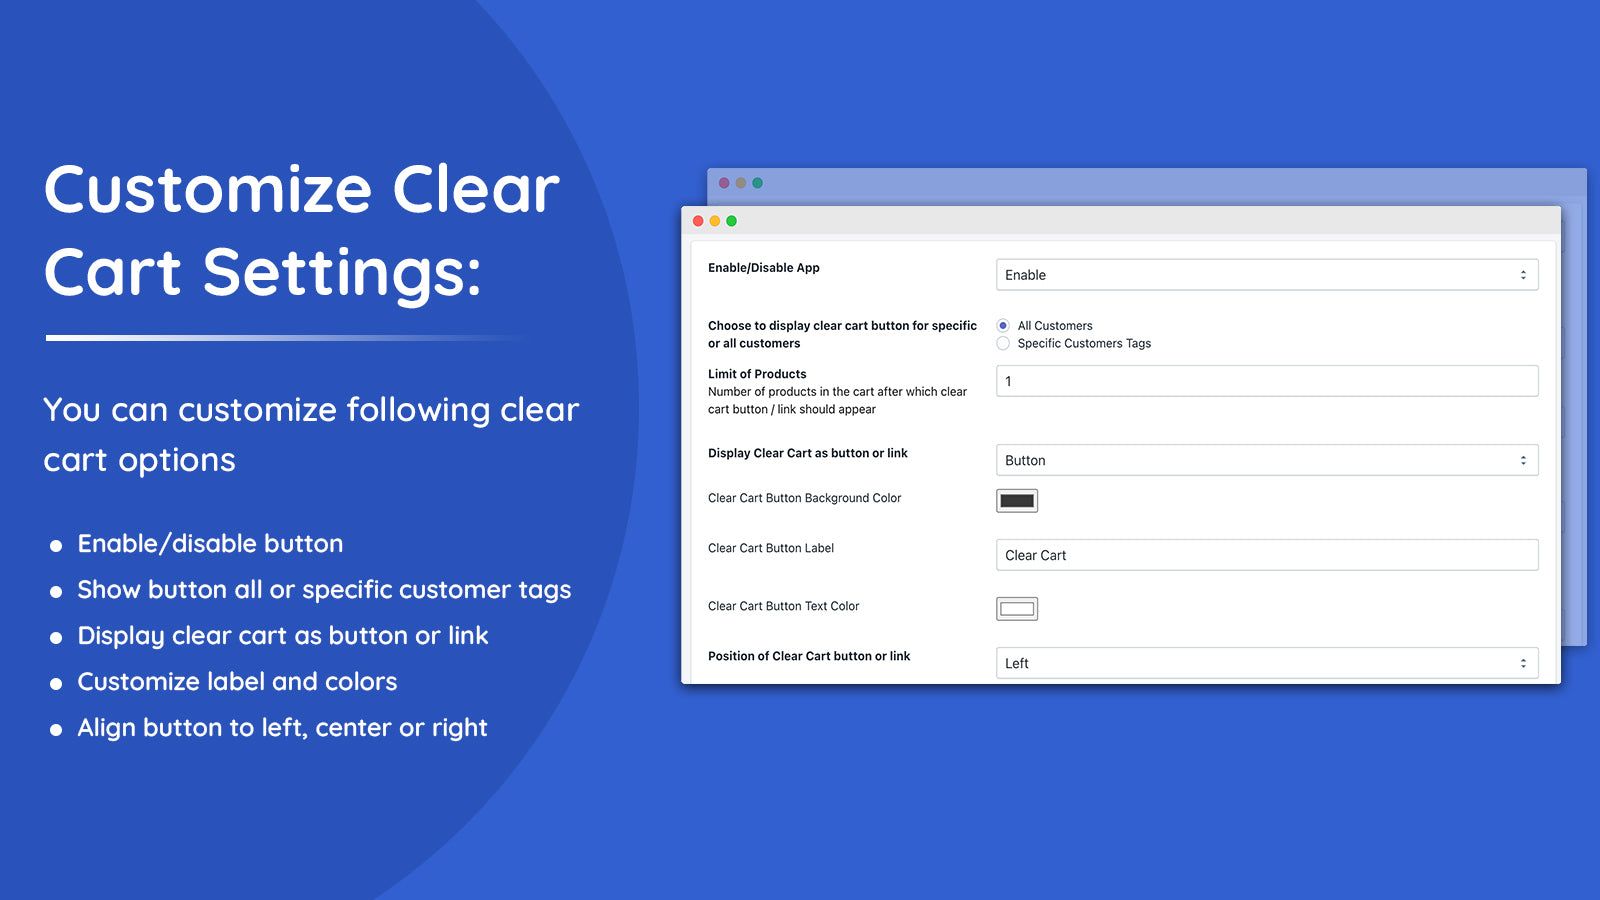 Customize clear cart app settings